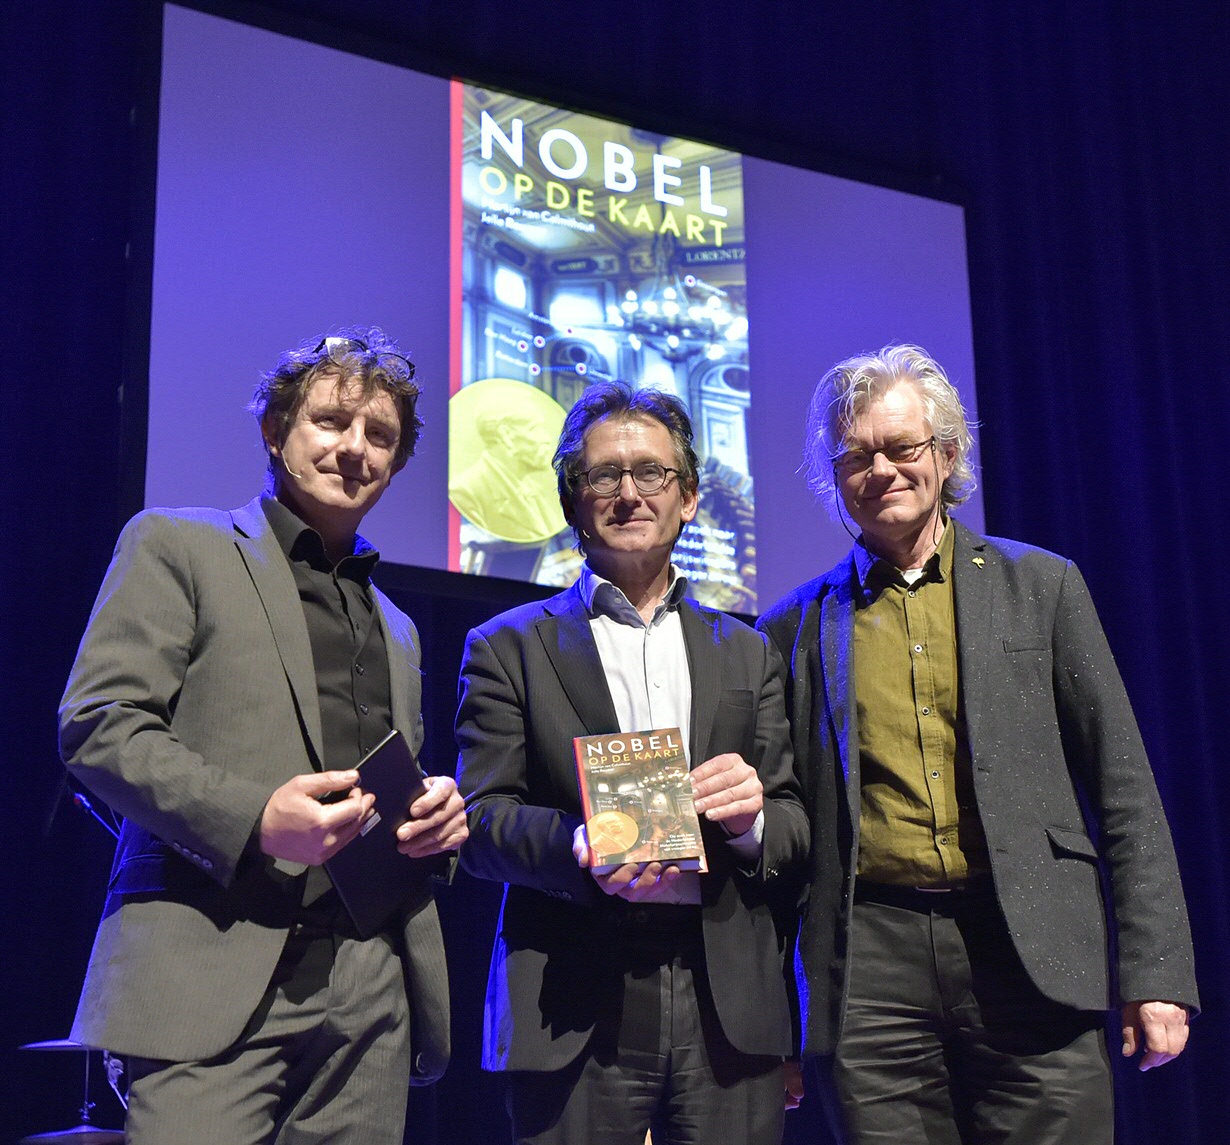 Martijn van Calmthout and Jelle Reumer present Feringa with their book 'Nobel op de kaart' [Nobel on the map]